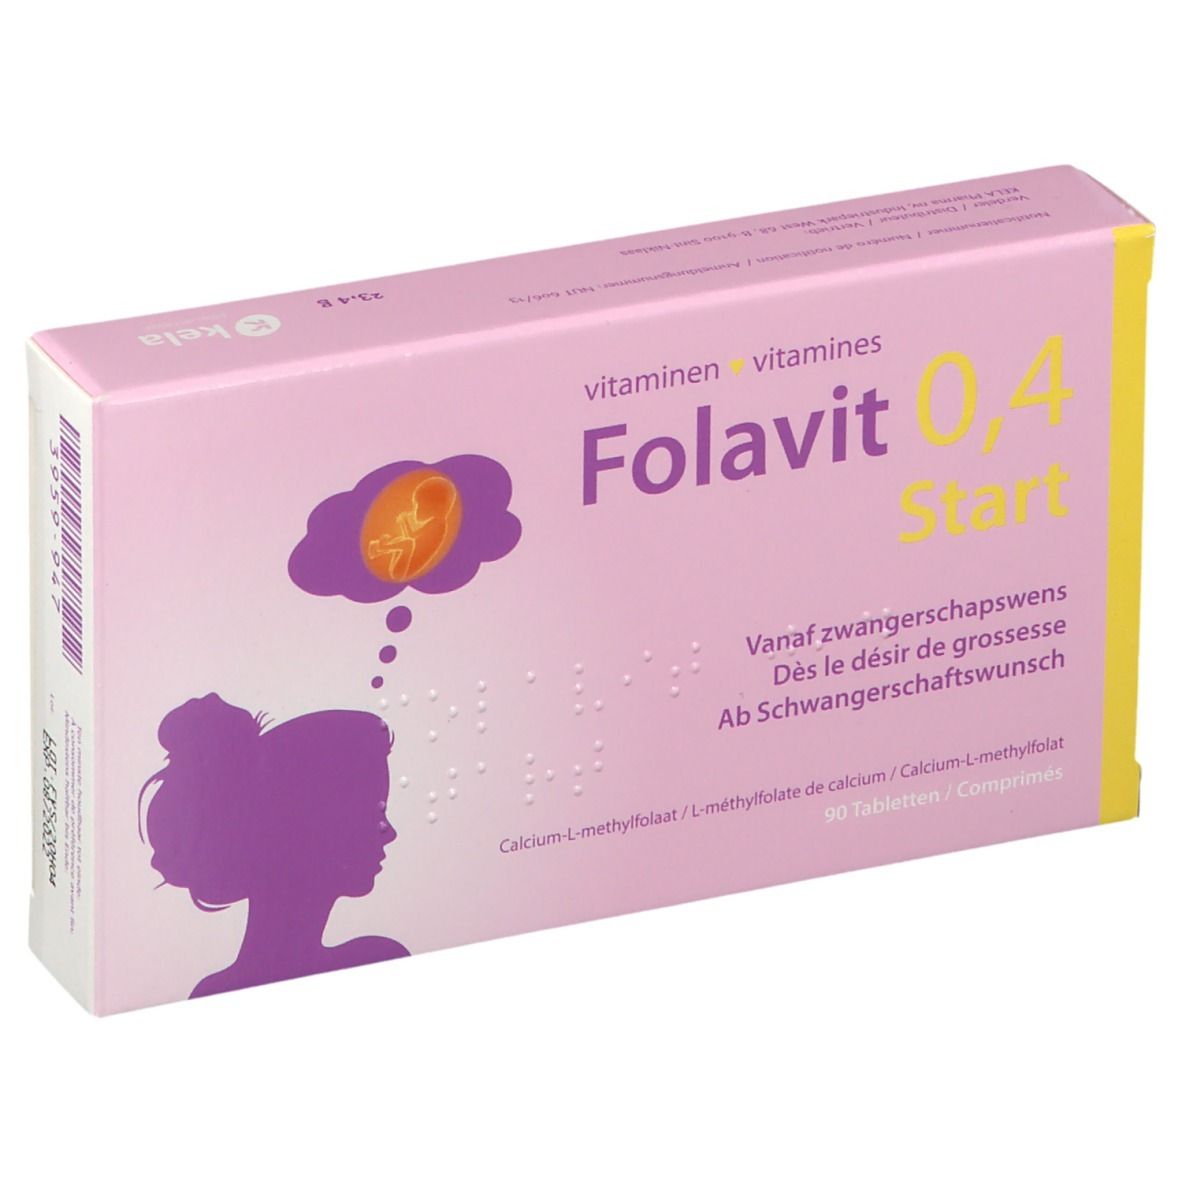 Folavit 0,4 Start